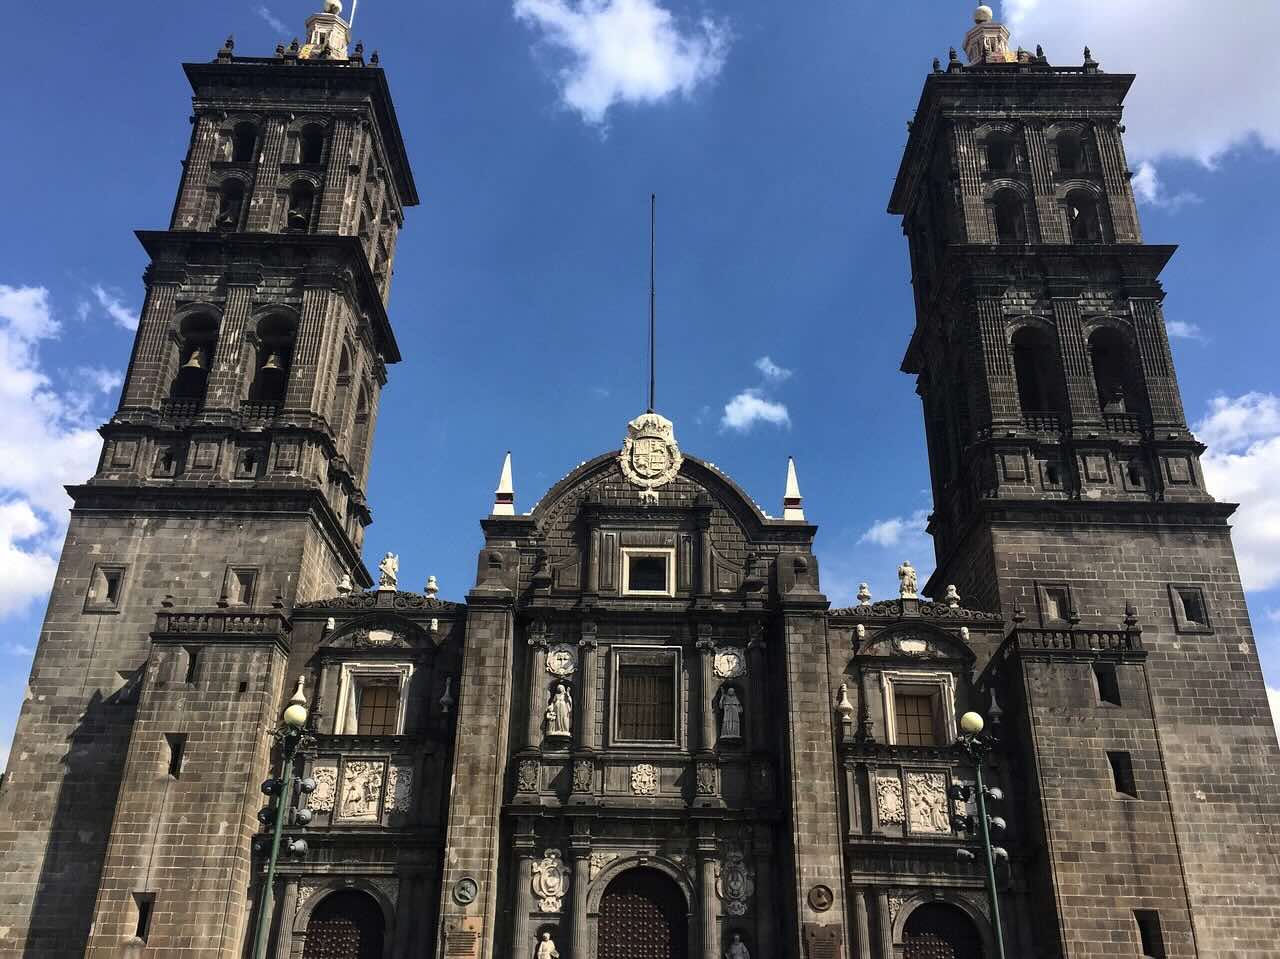 Presentan proyecto para medir sismicidad en edificios históricos de Puebla